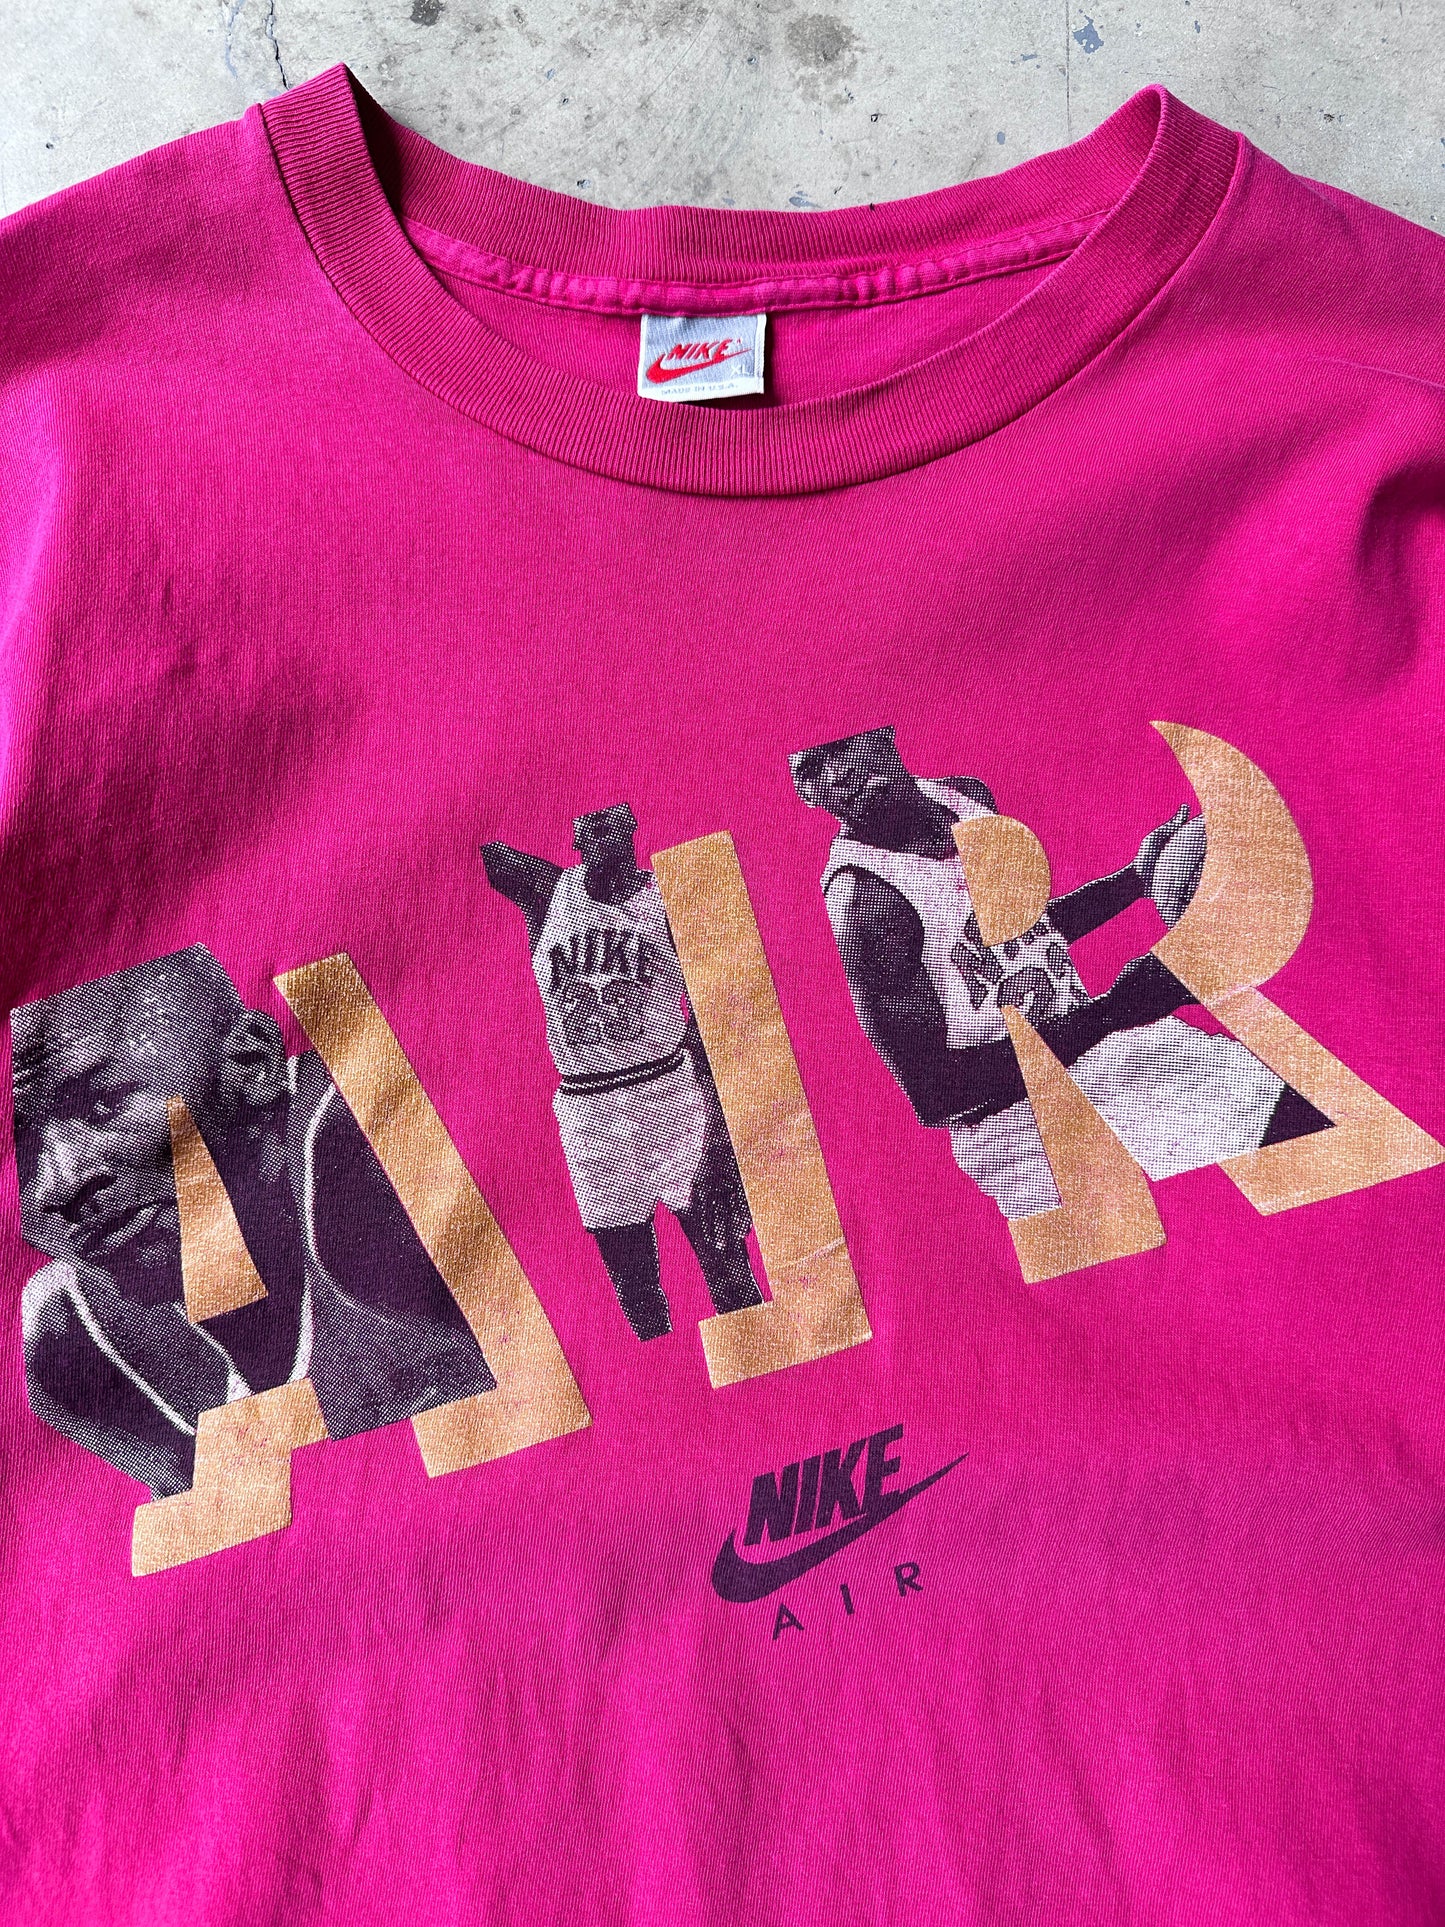 Camiseta Nike Jordan vintage 1991